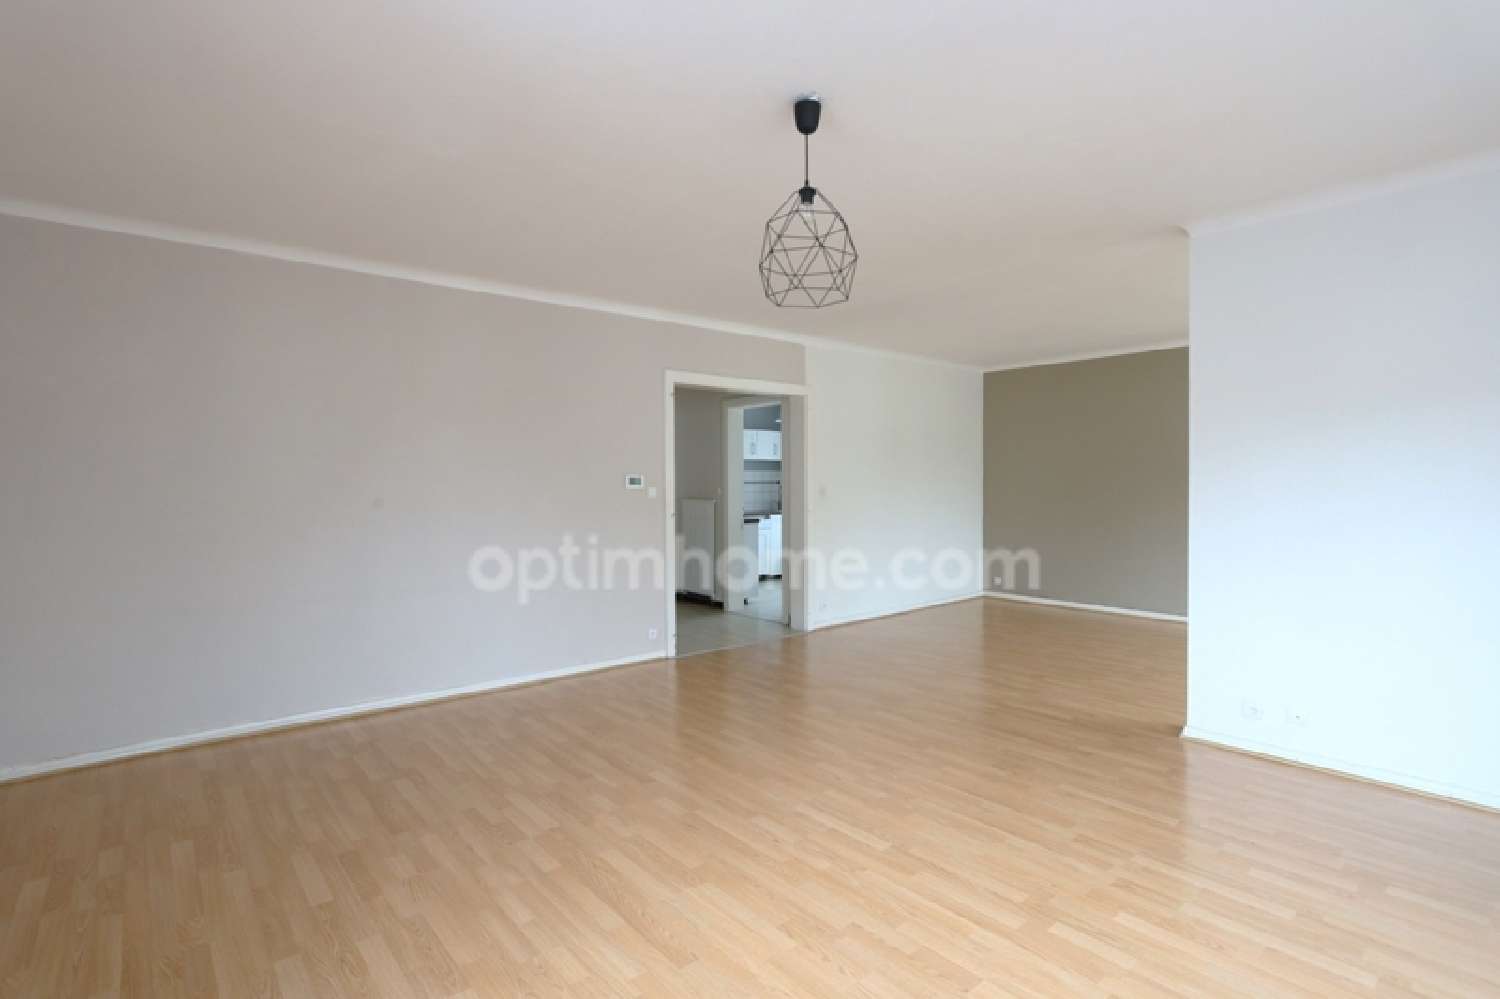  for sale apartment Gandrange Moselle 3